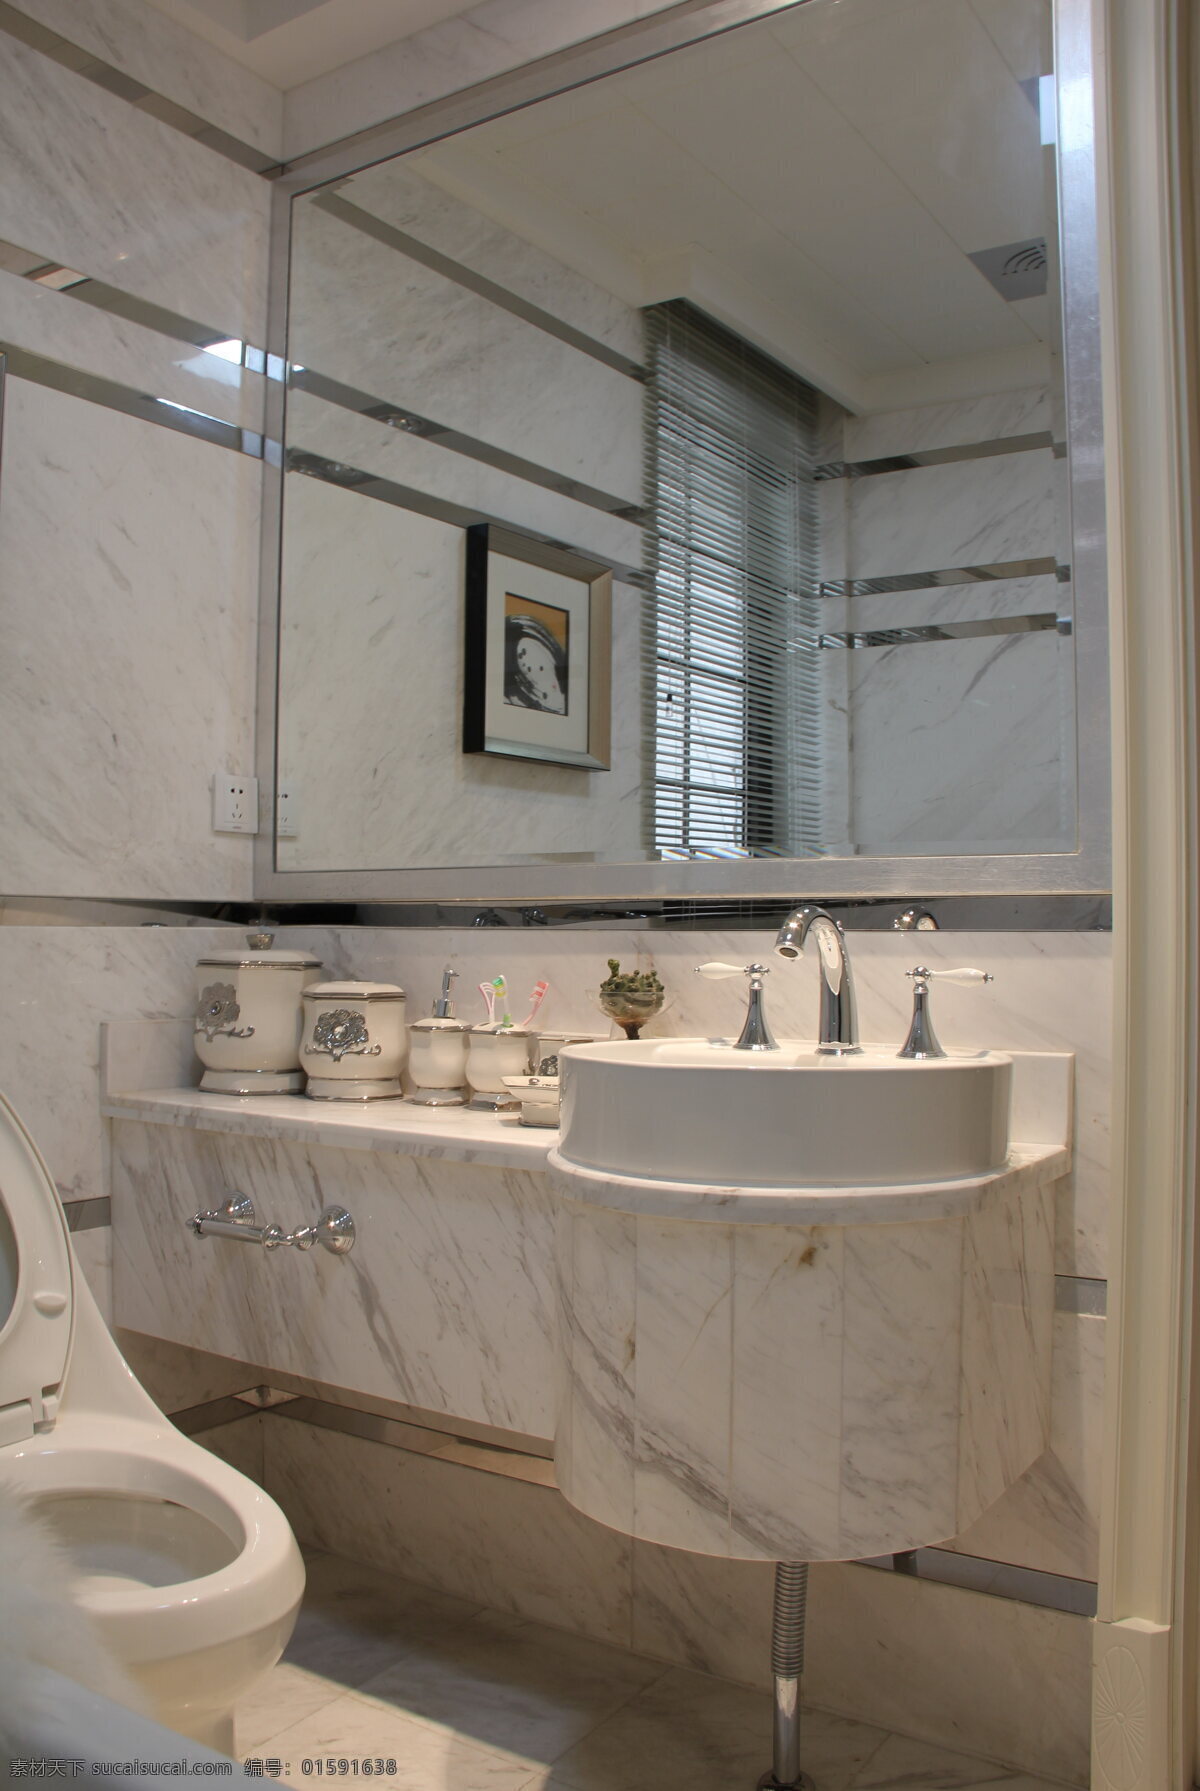 现代 简约 浴室 方形 镜子 室内装修 效果图 浴室装修 灰白色桌面 圆形洗手台 浅色地板